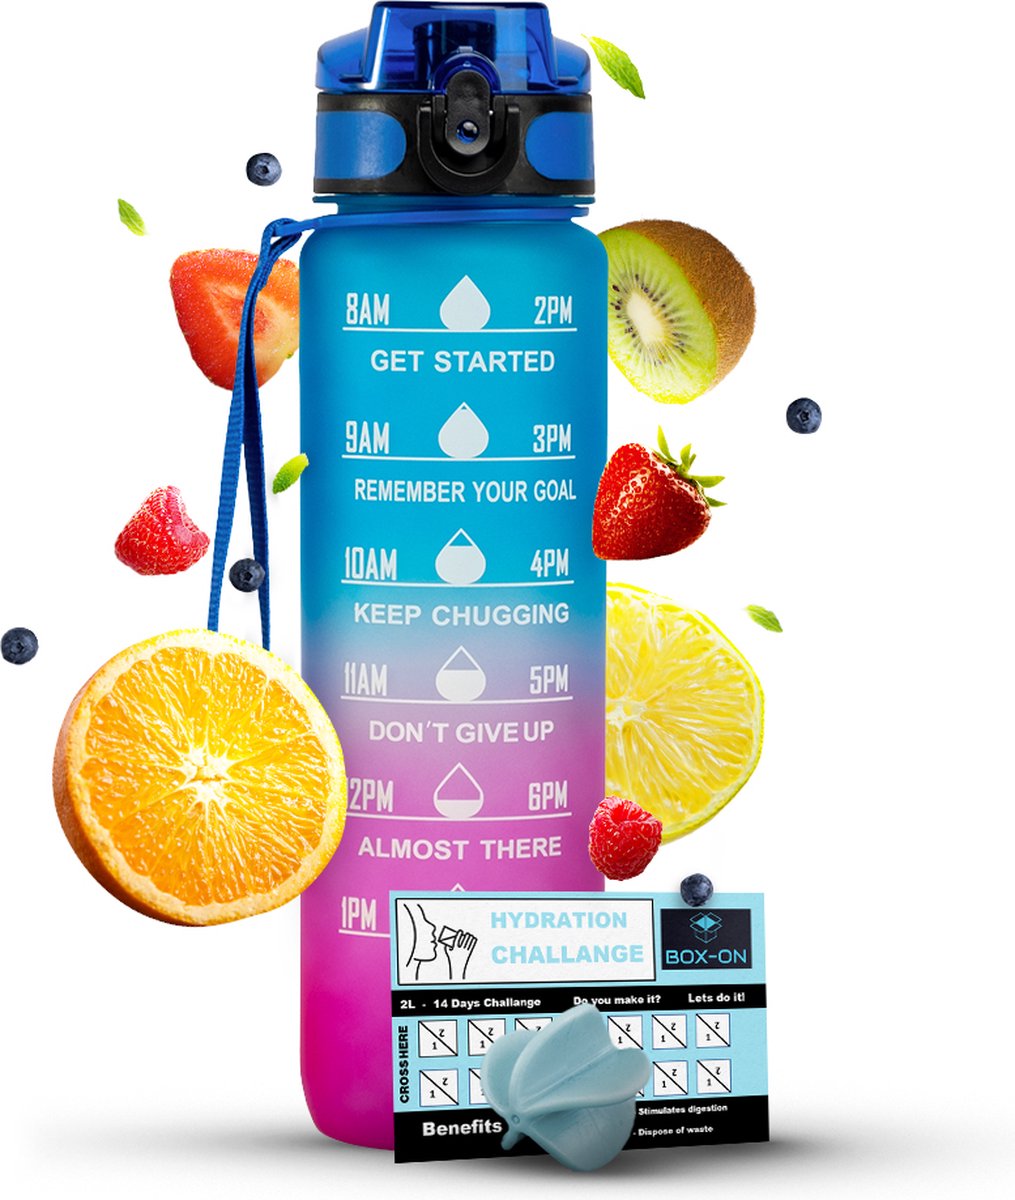 Motivatie Waterfles - Met Fruitfilter - Inclusief Shake Bal - Blauw/Roze - 1 Liter Drinkfles - Motivatiefles - Waterfles met tijdmarkering - BPA Vrij - Volwassenen - Kinderen - Met Box-On Hydration Challenge